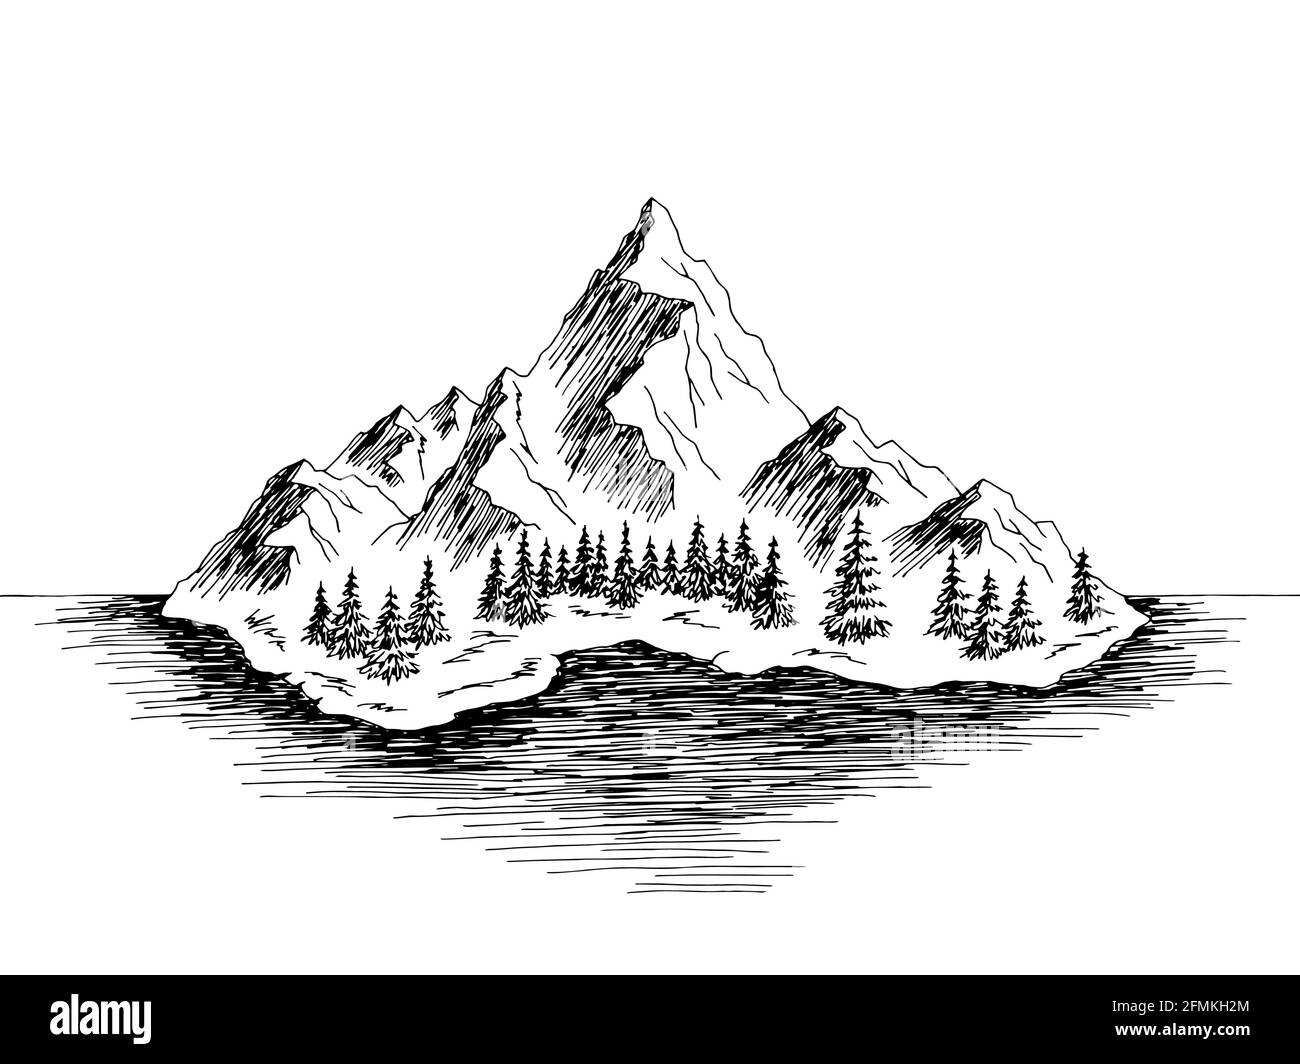 Island Mountain Graphic noir blanc paysage dessin illustration vecteur Illustration de Vecteur